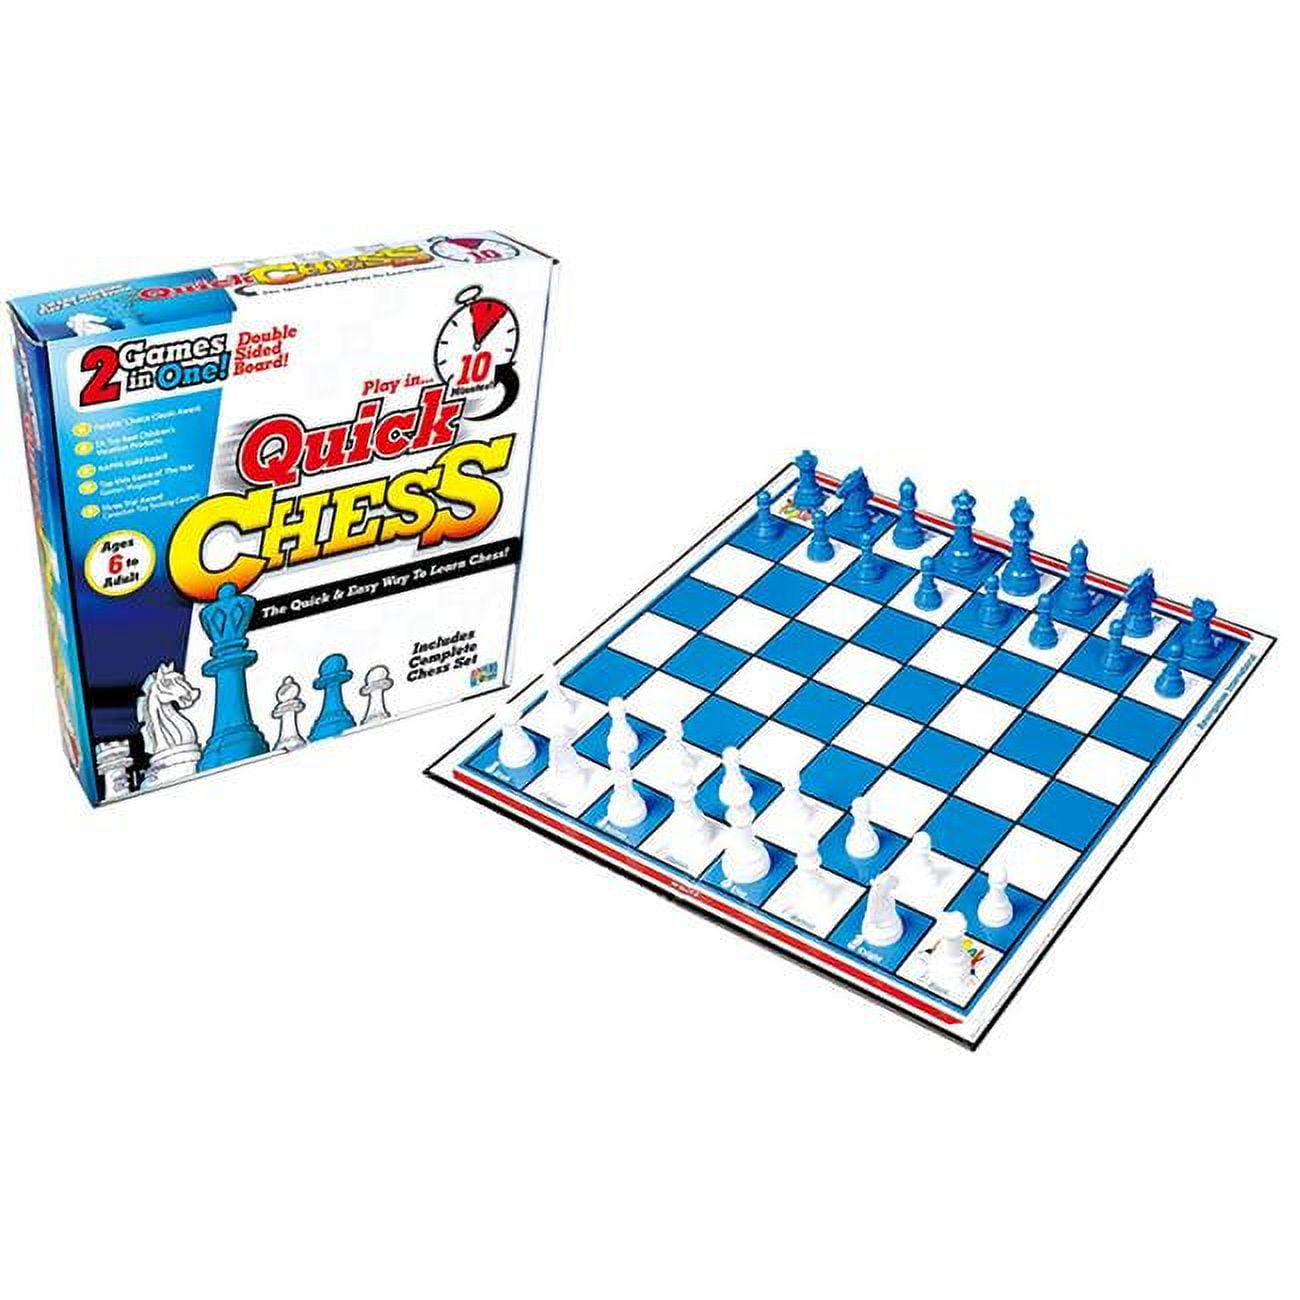 Bobby's Blitz Chess - The Chess Drum